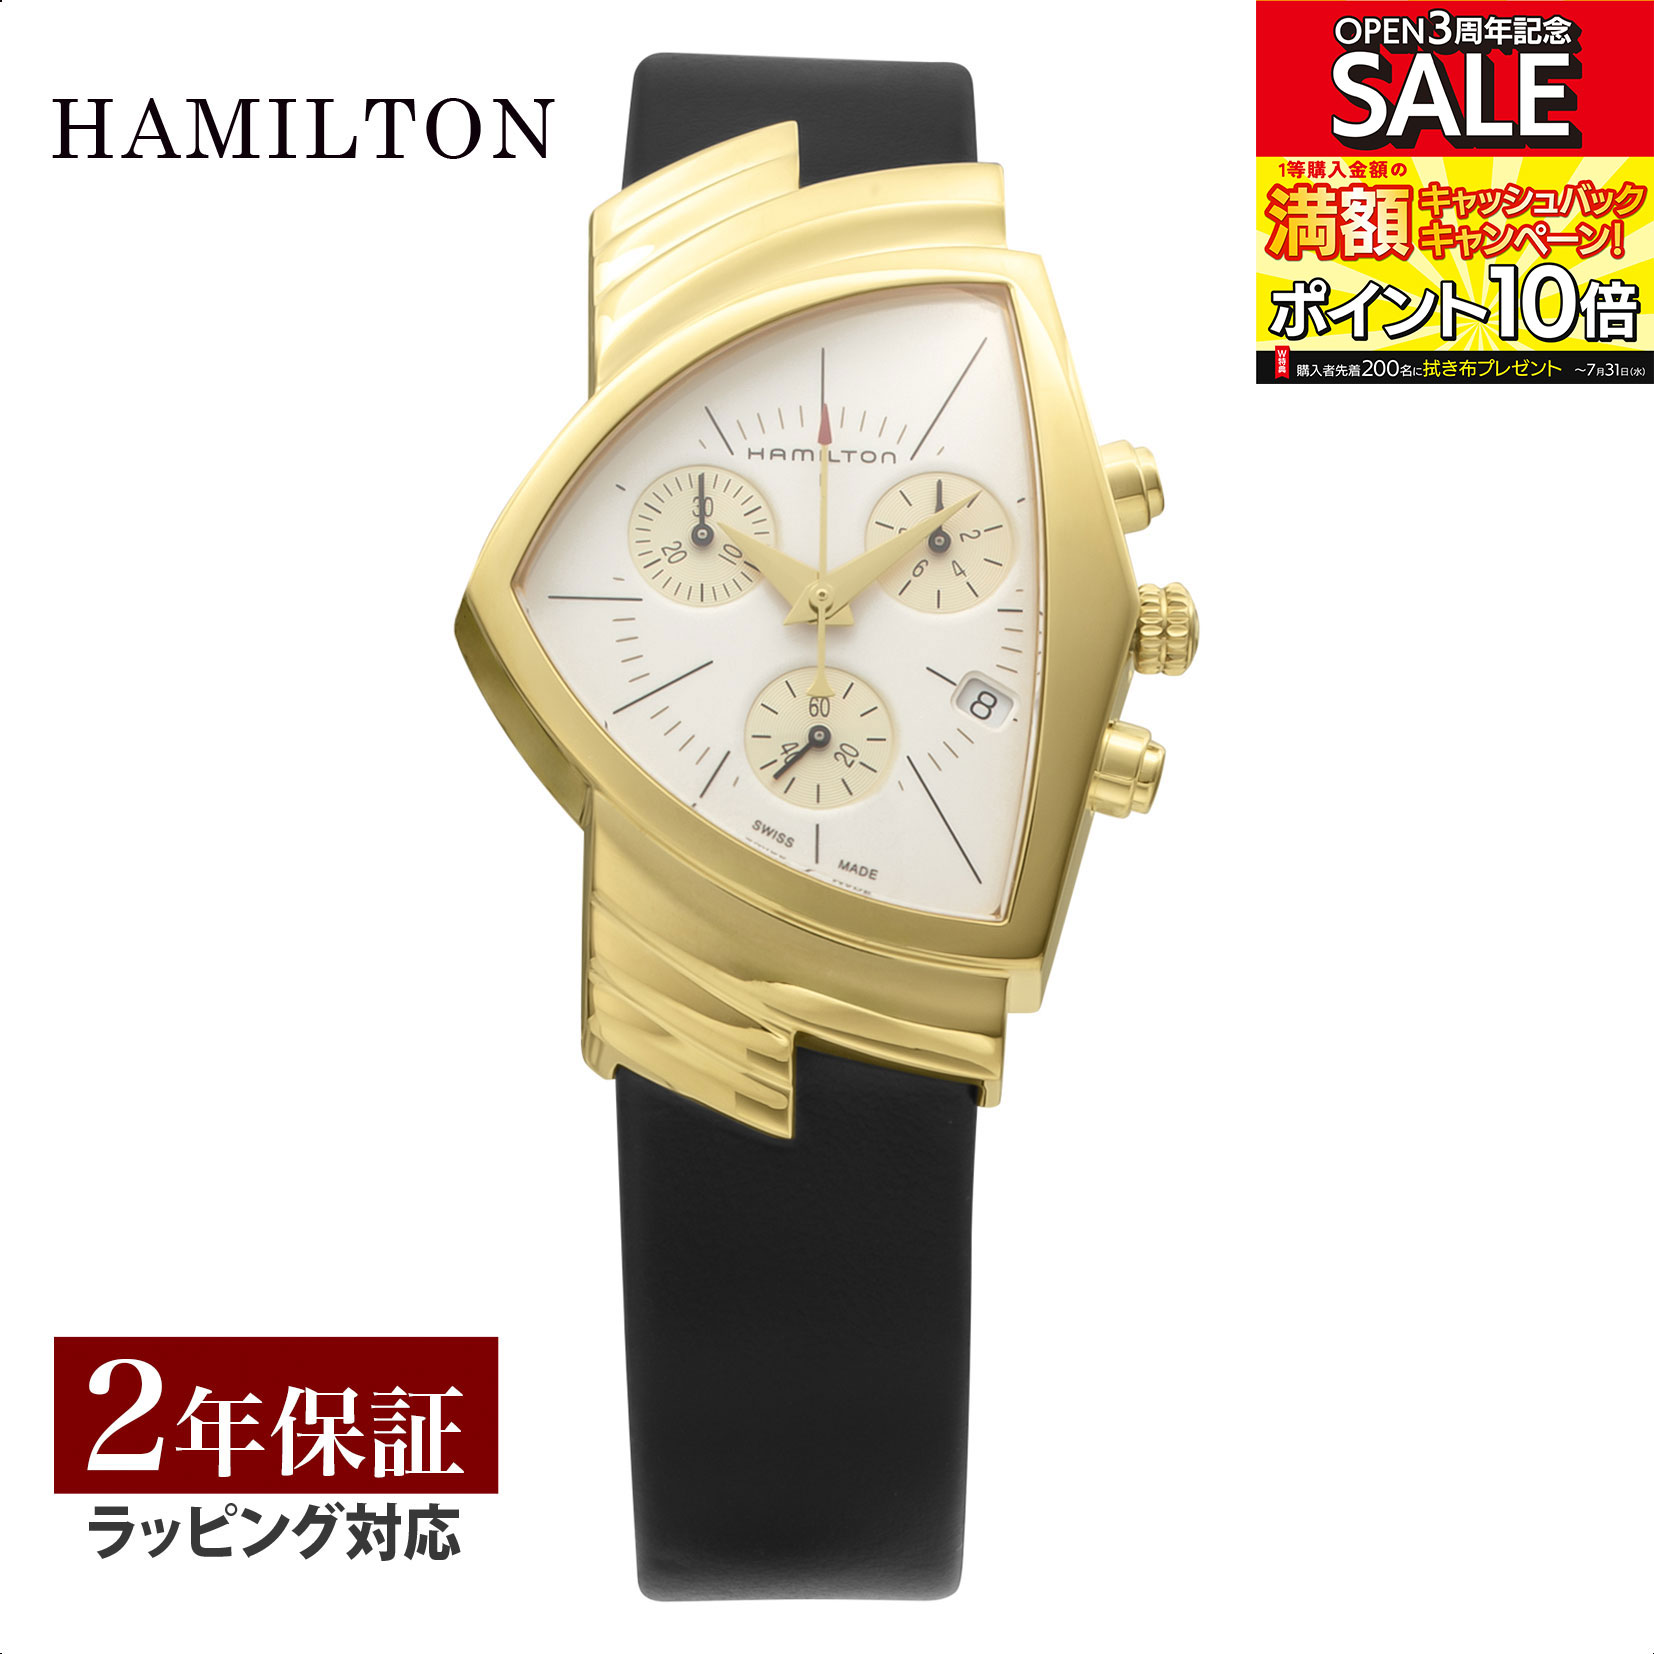 ハミルトン 腕時計 ハミルトン HAMILTON メンズ 時計 VENTURA ベンチュラ クォーツ シルバー H24422751 時計 腕時計 高級腕時計 ブランド